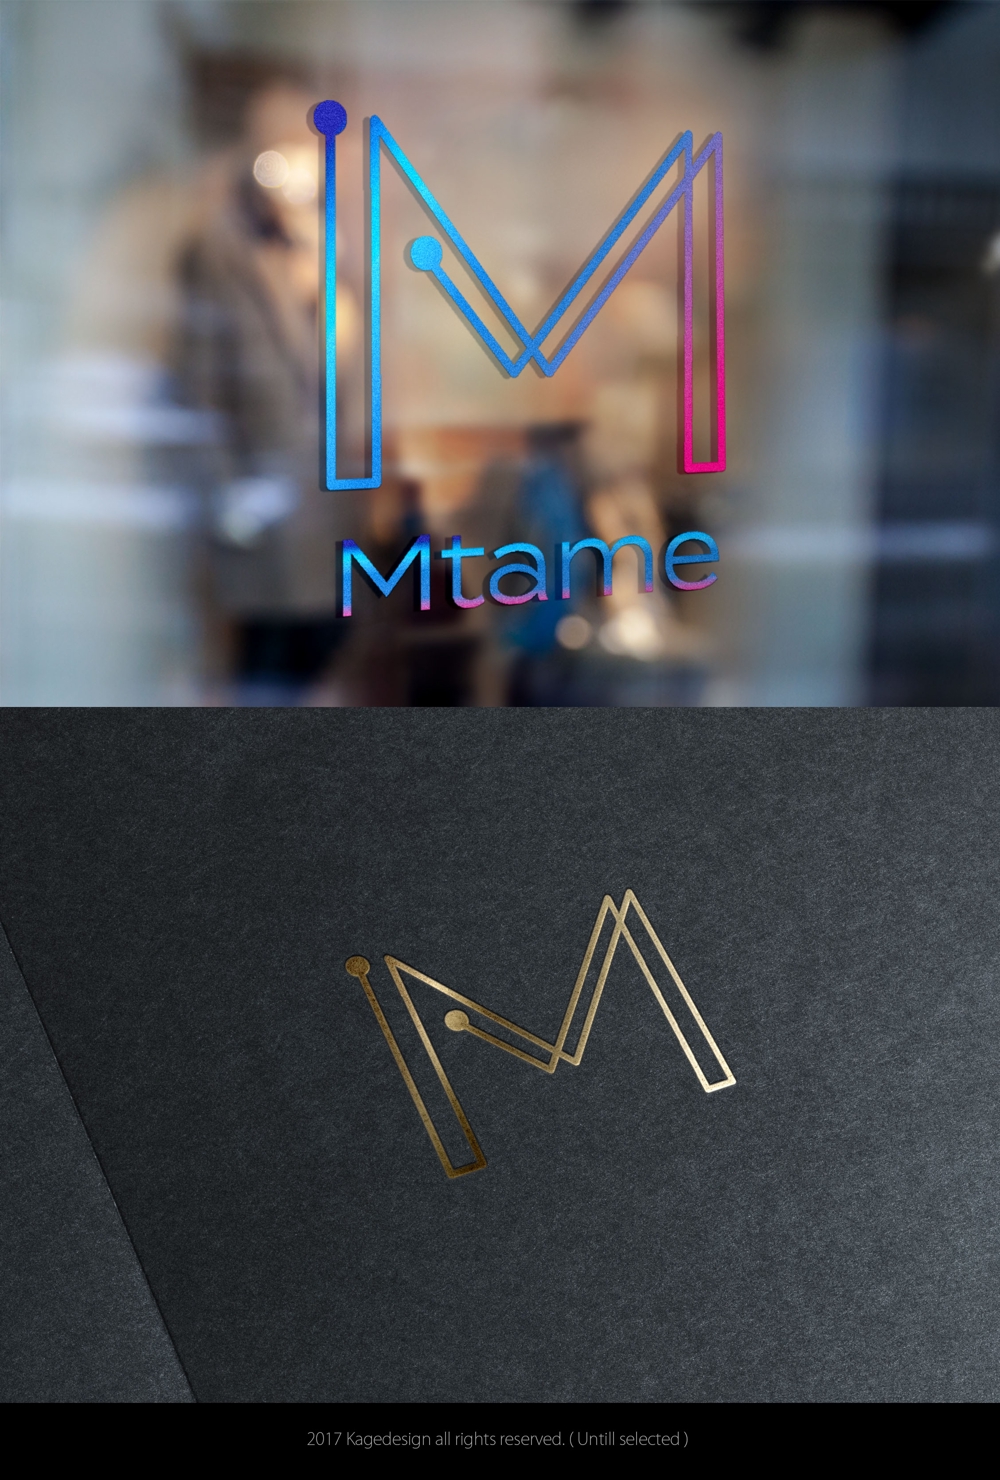 WEBプロモーション事業を手掛ける新会社「Mtame株式会社」のロゴ